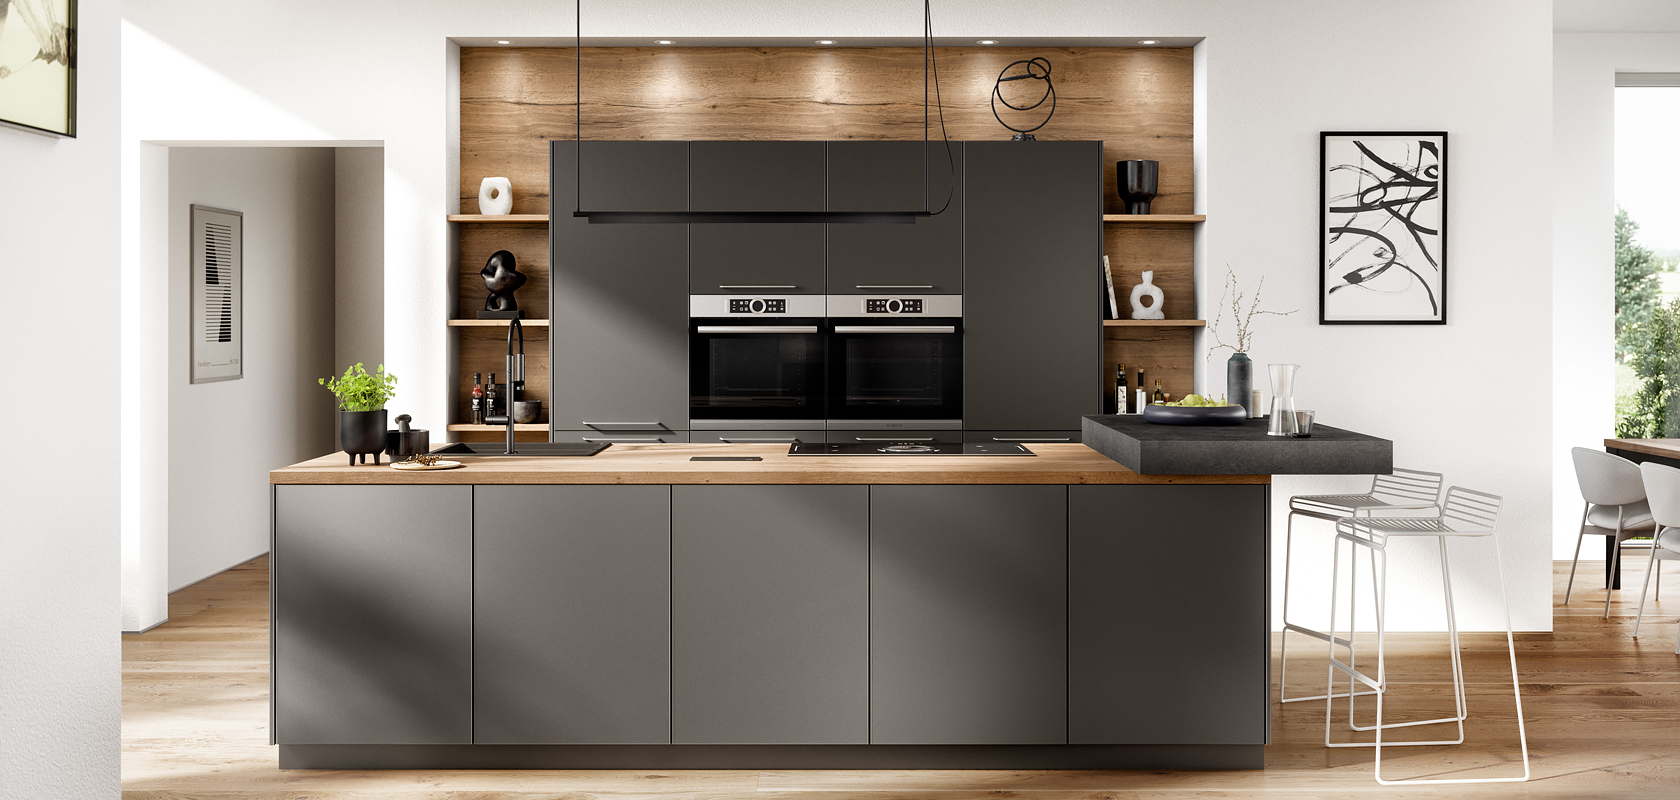 Moderní kuchyňský interiér s elegantními tmavými skříněmi, vestavěnými spotřebiči a dřevěnými doplňky, které spojují funkcionalitu se stylem v jasné, minimalistickém designu domova.